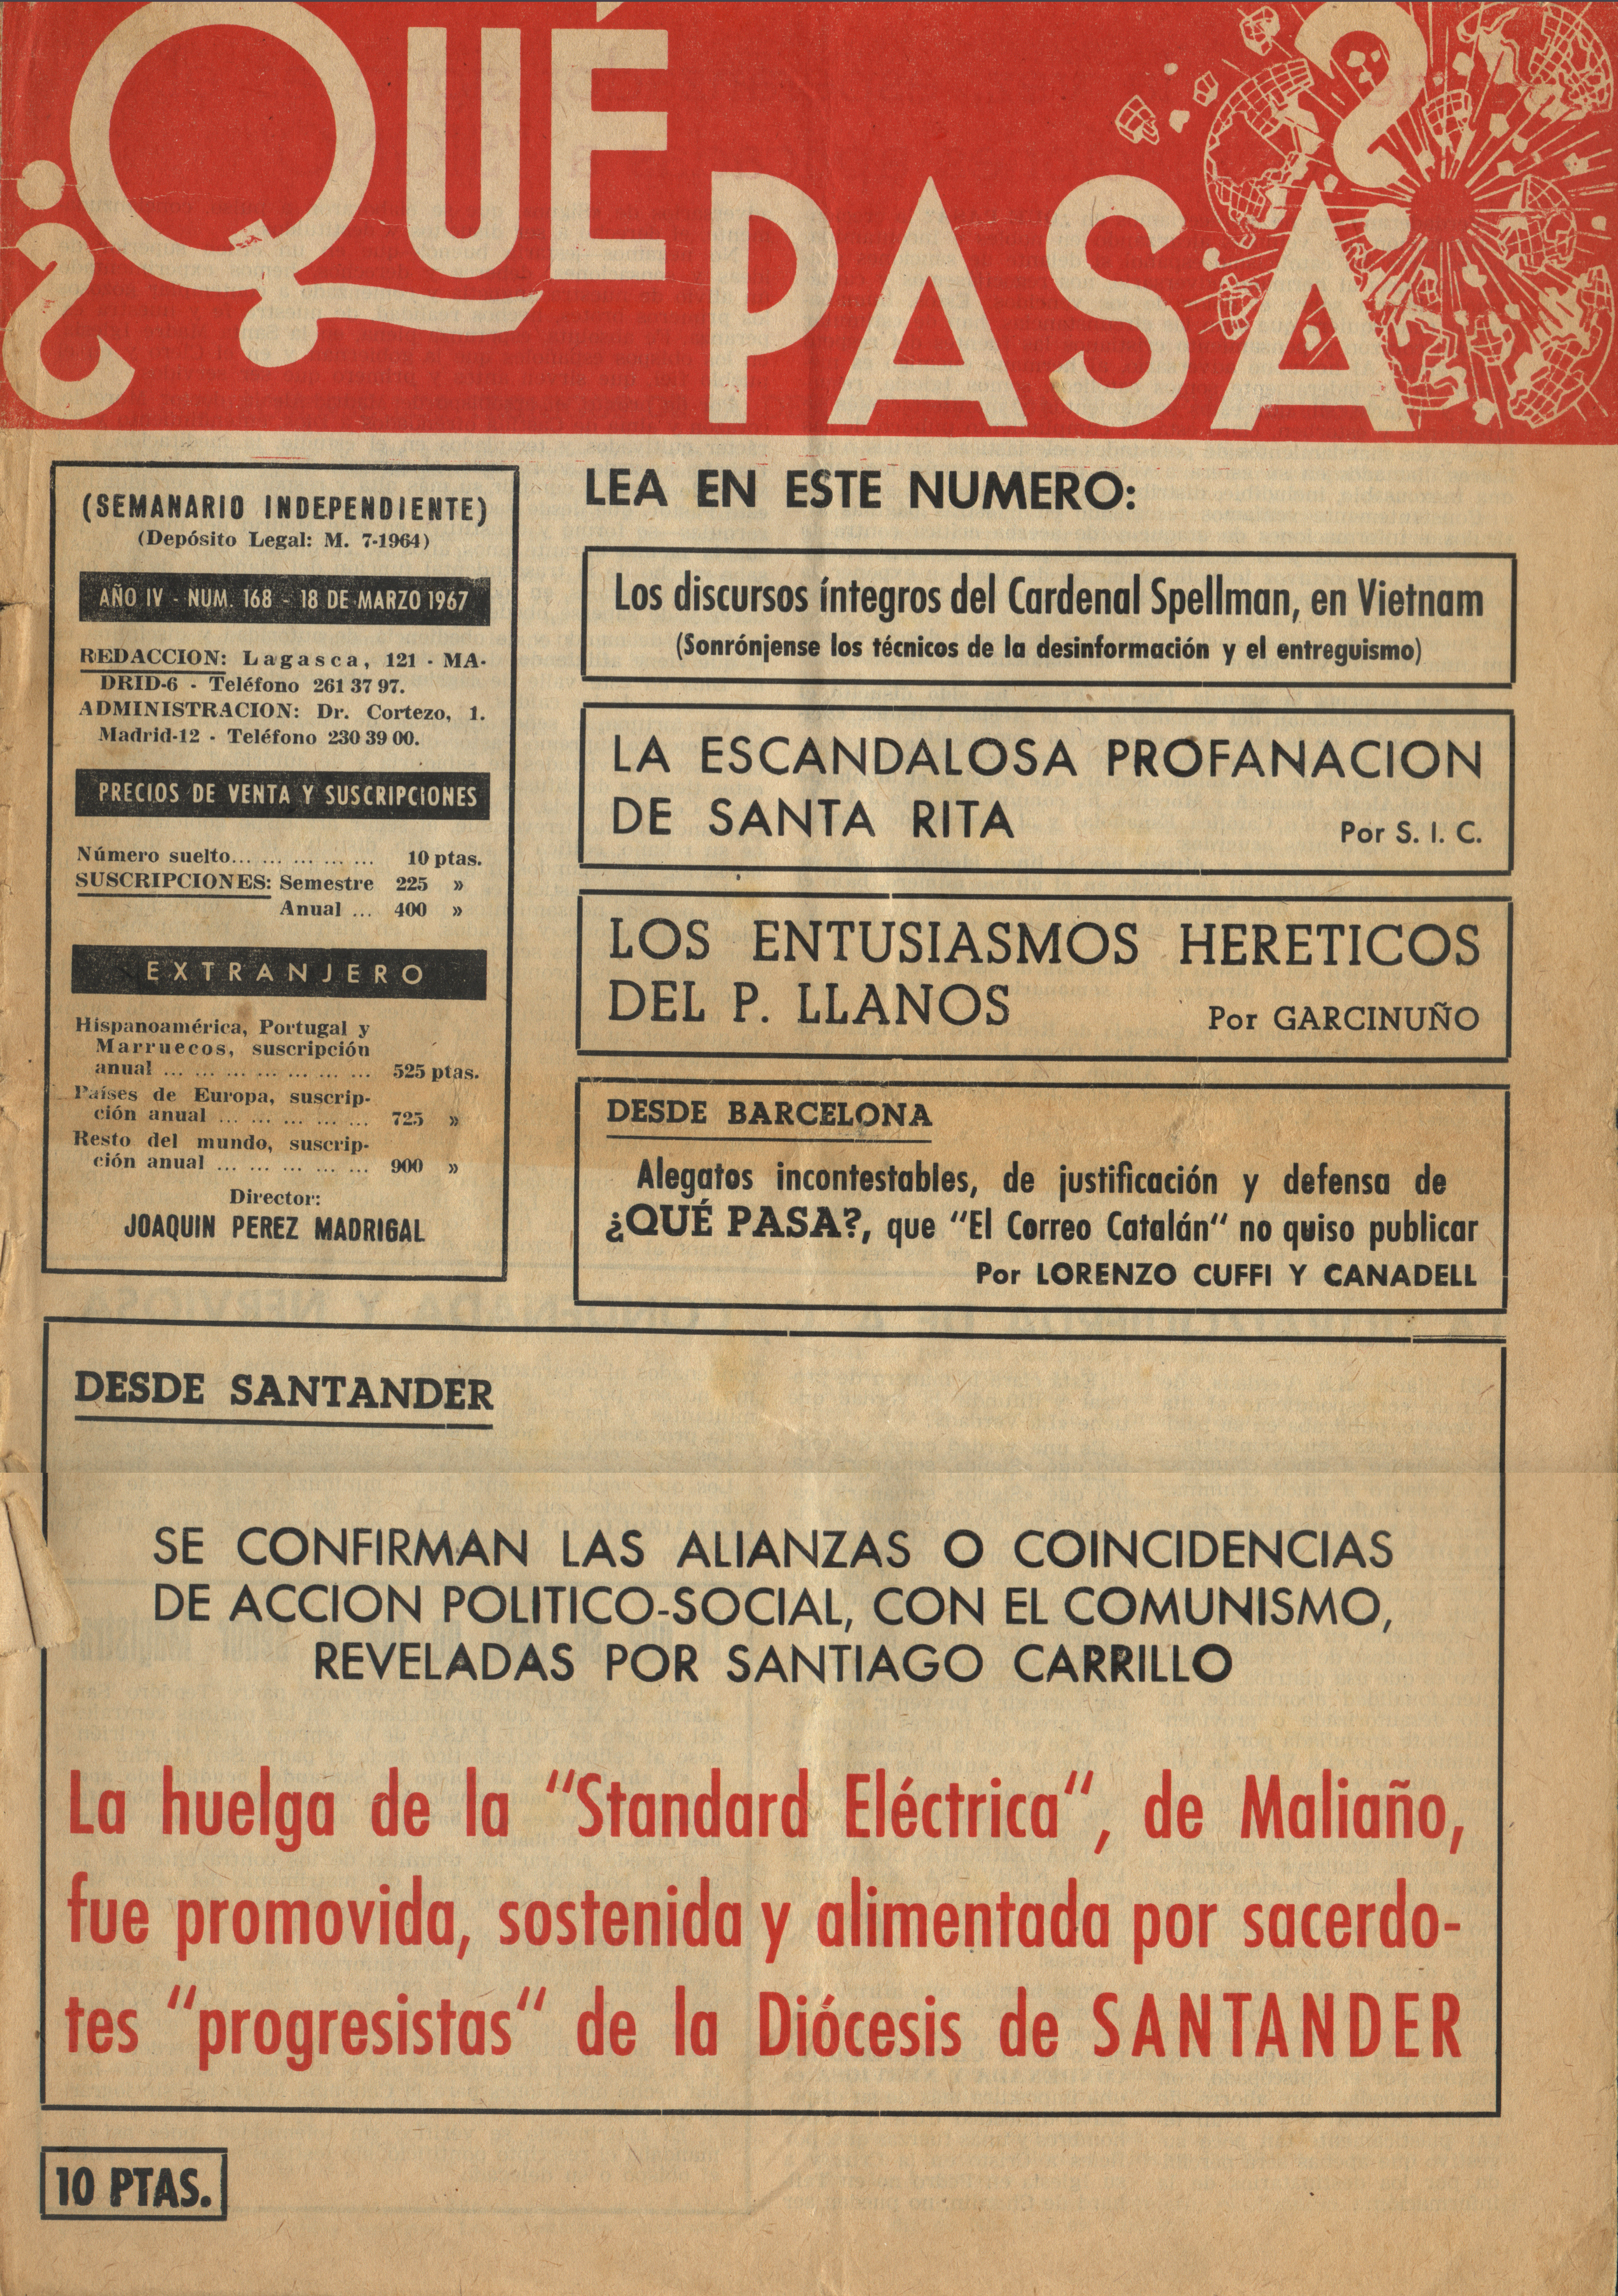 1967-03-18-Revista-Que-Pasa-1.jpg